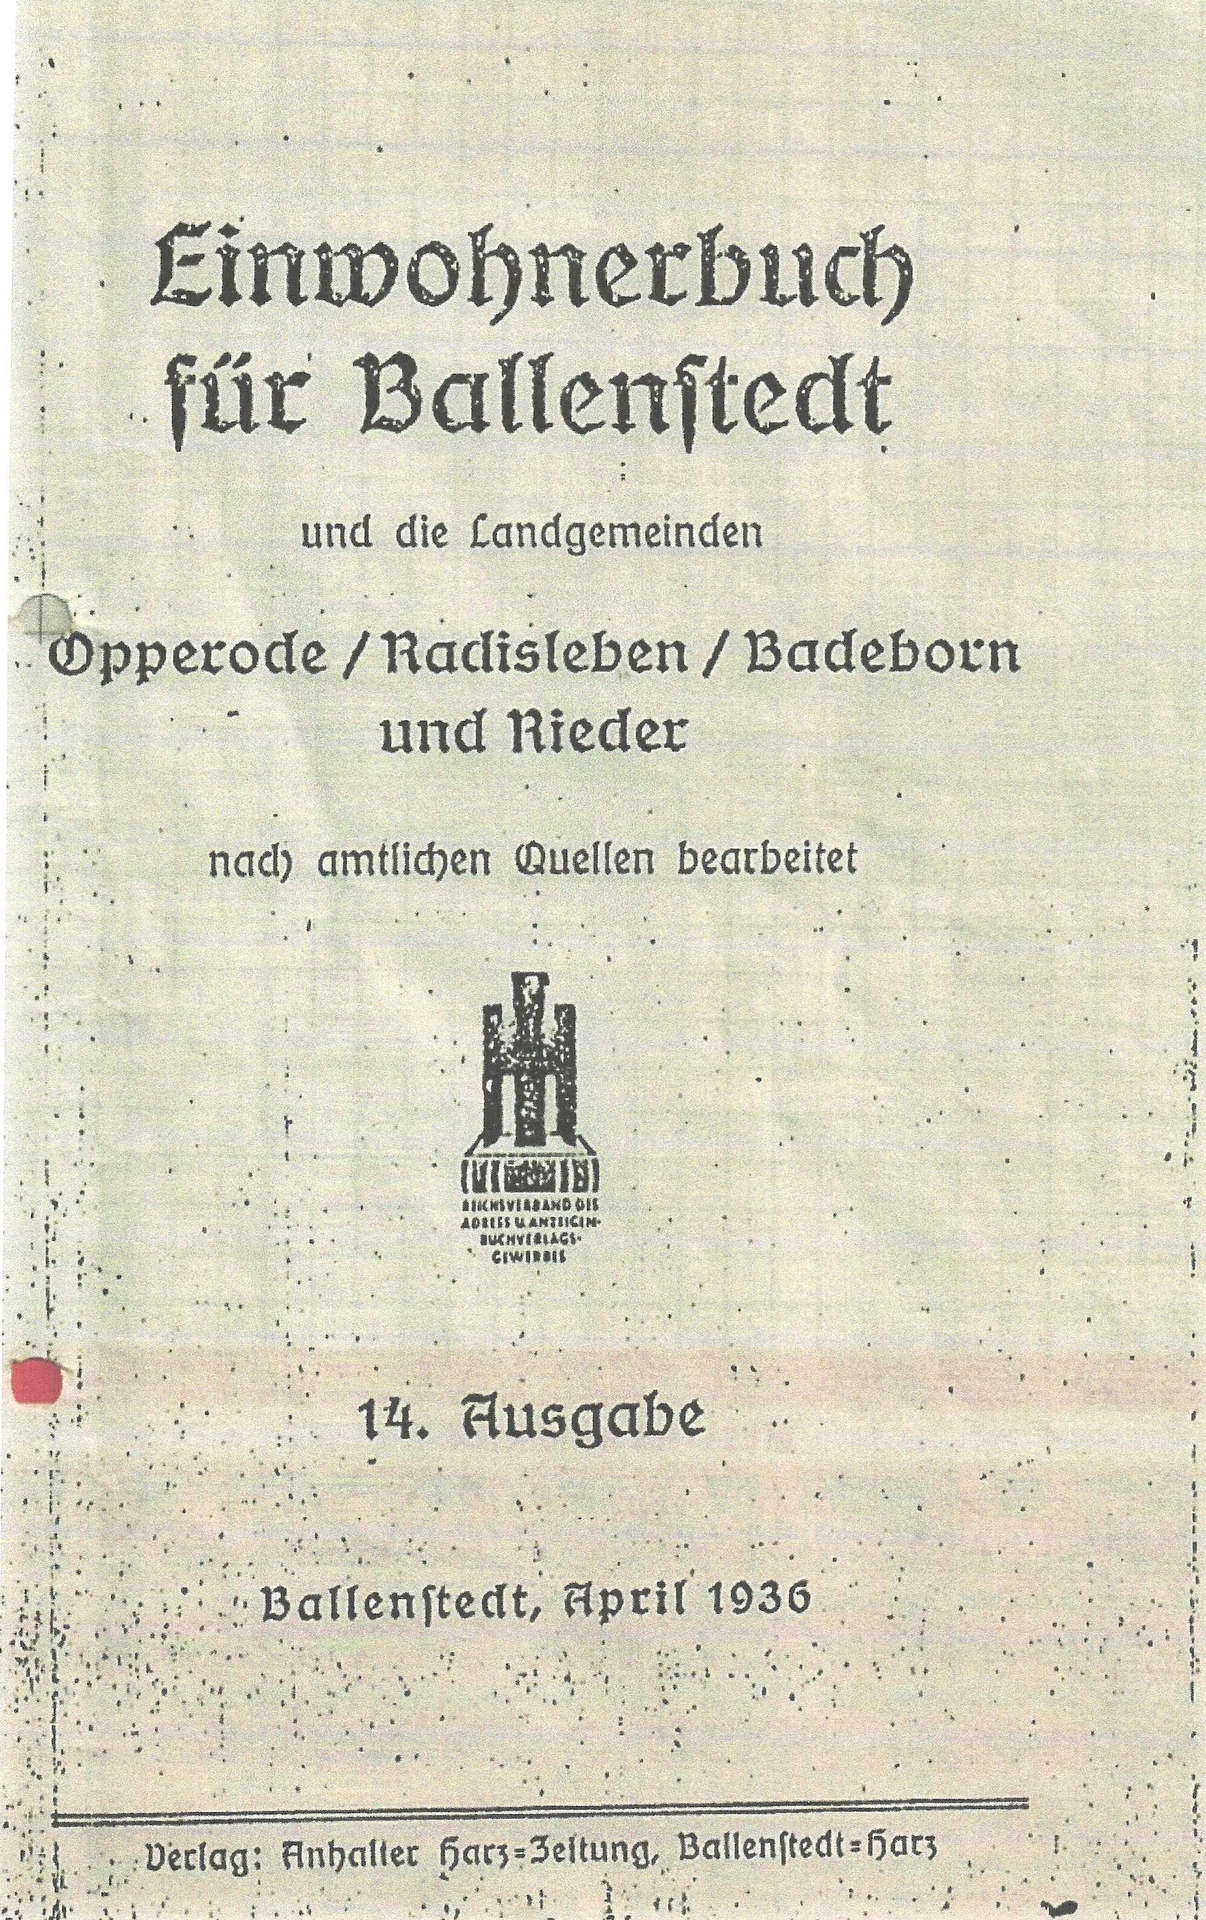 Bild: Einwohnermeldebuch Rieder 1940  (1)